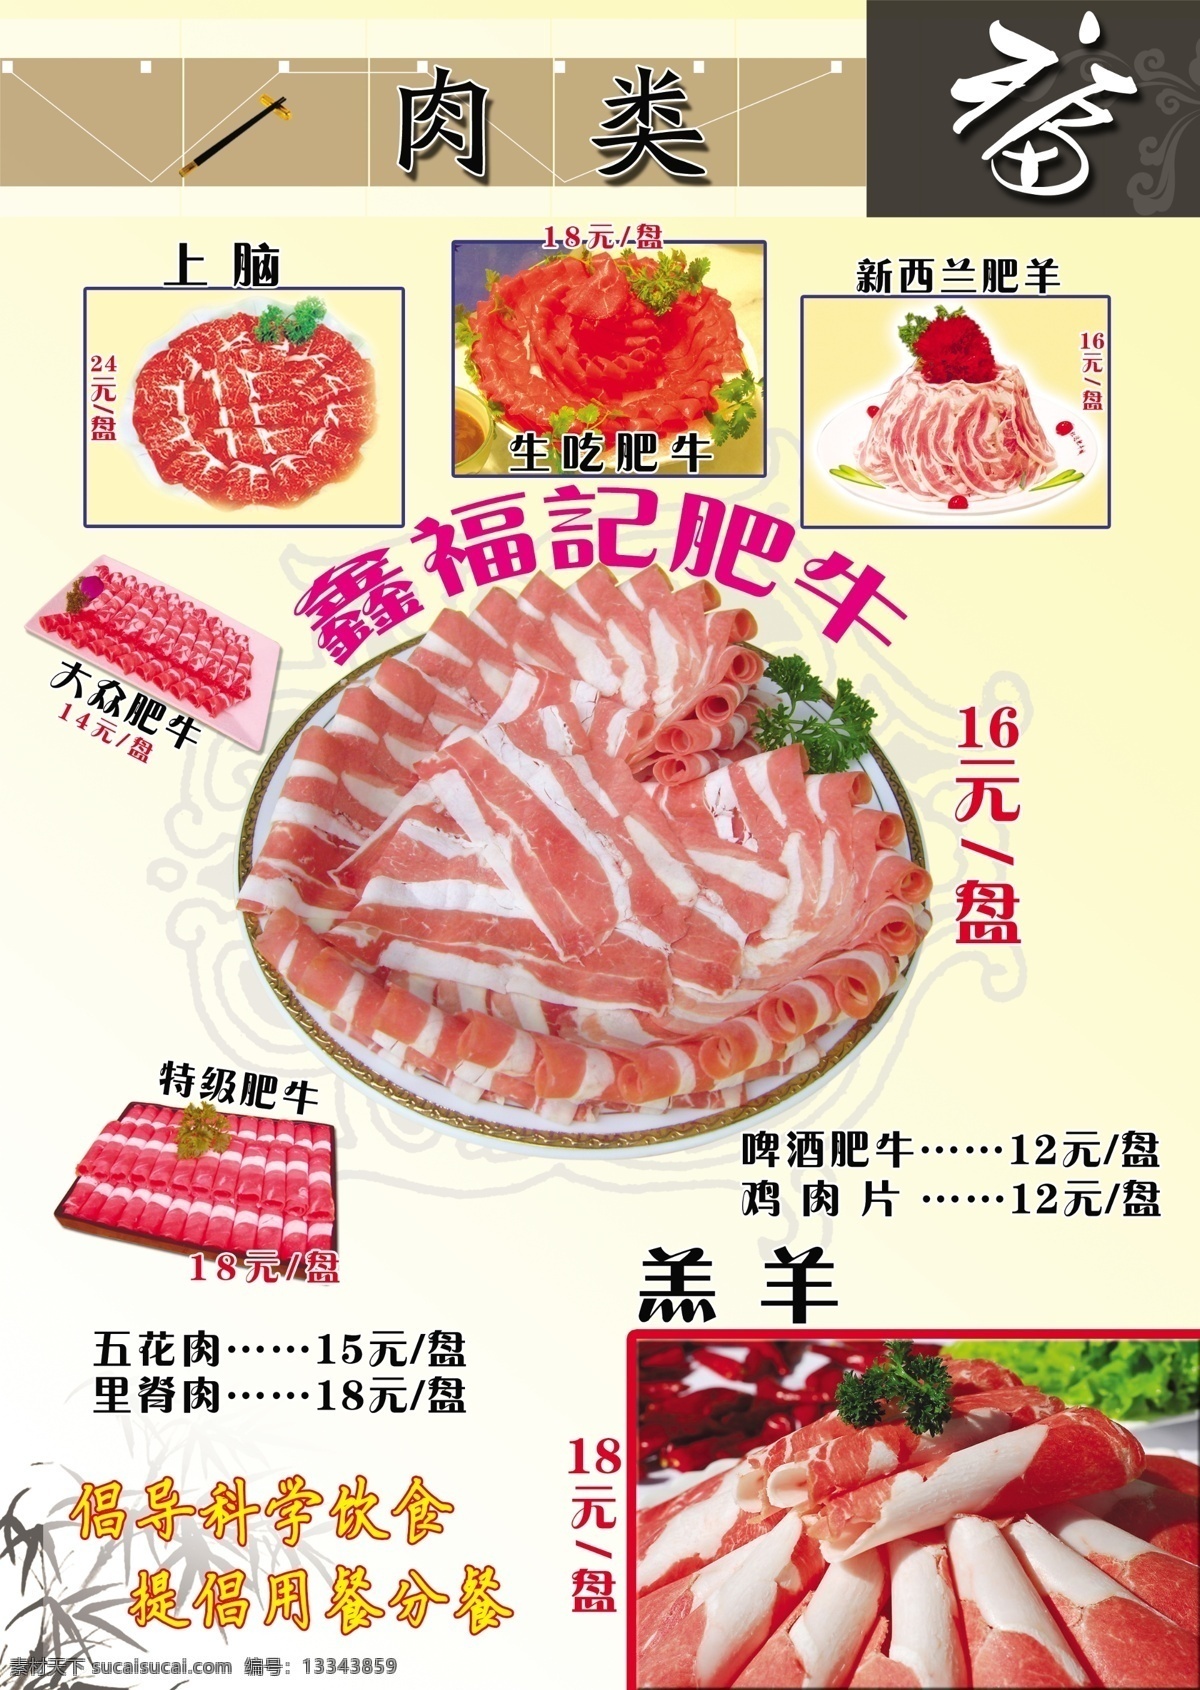 菜谱 菜单菜谱 福 广告设计模板 筷子 美食 牛肉 源文件 竹子 肉卷 画册 菜单 封面